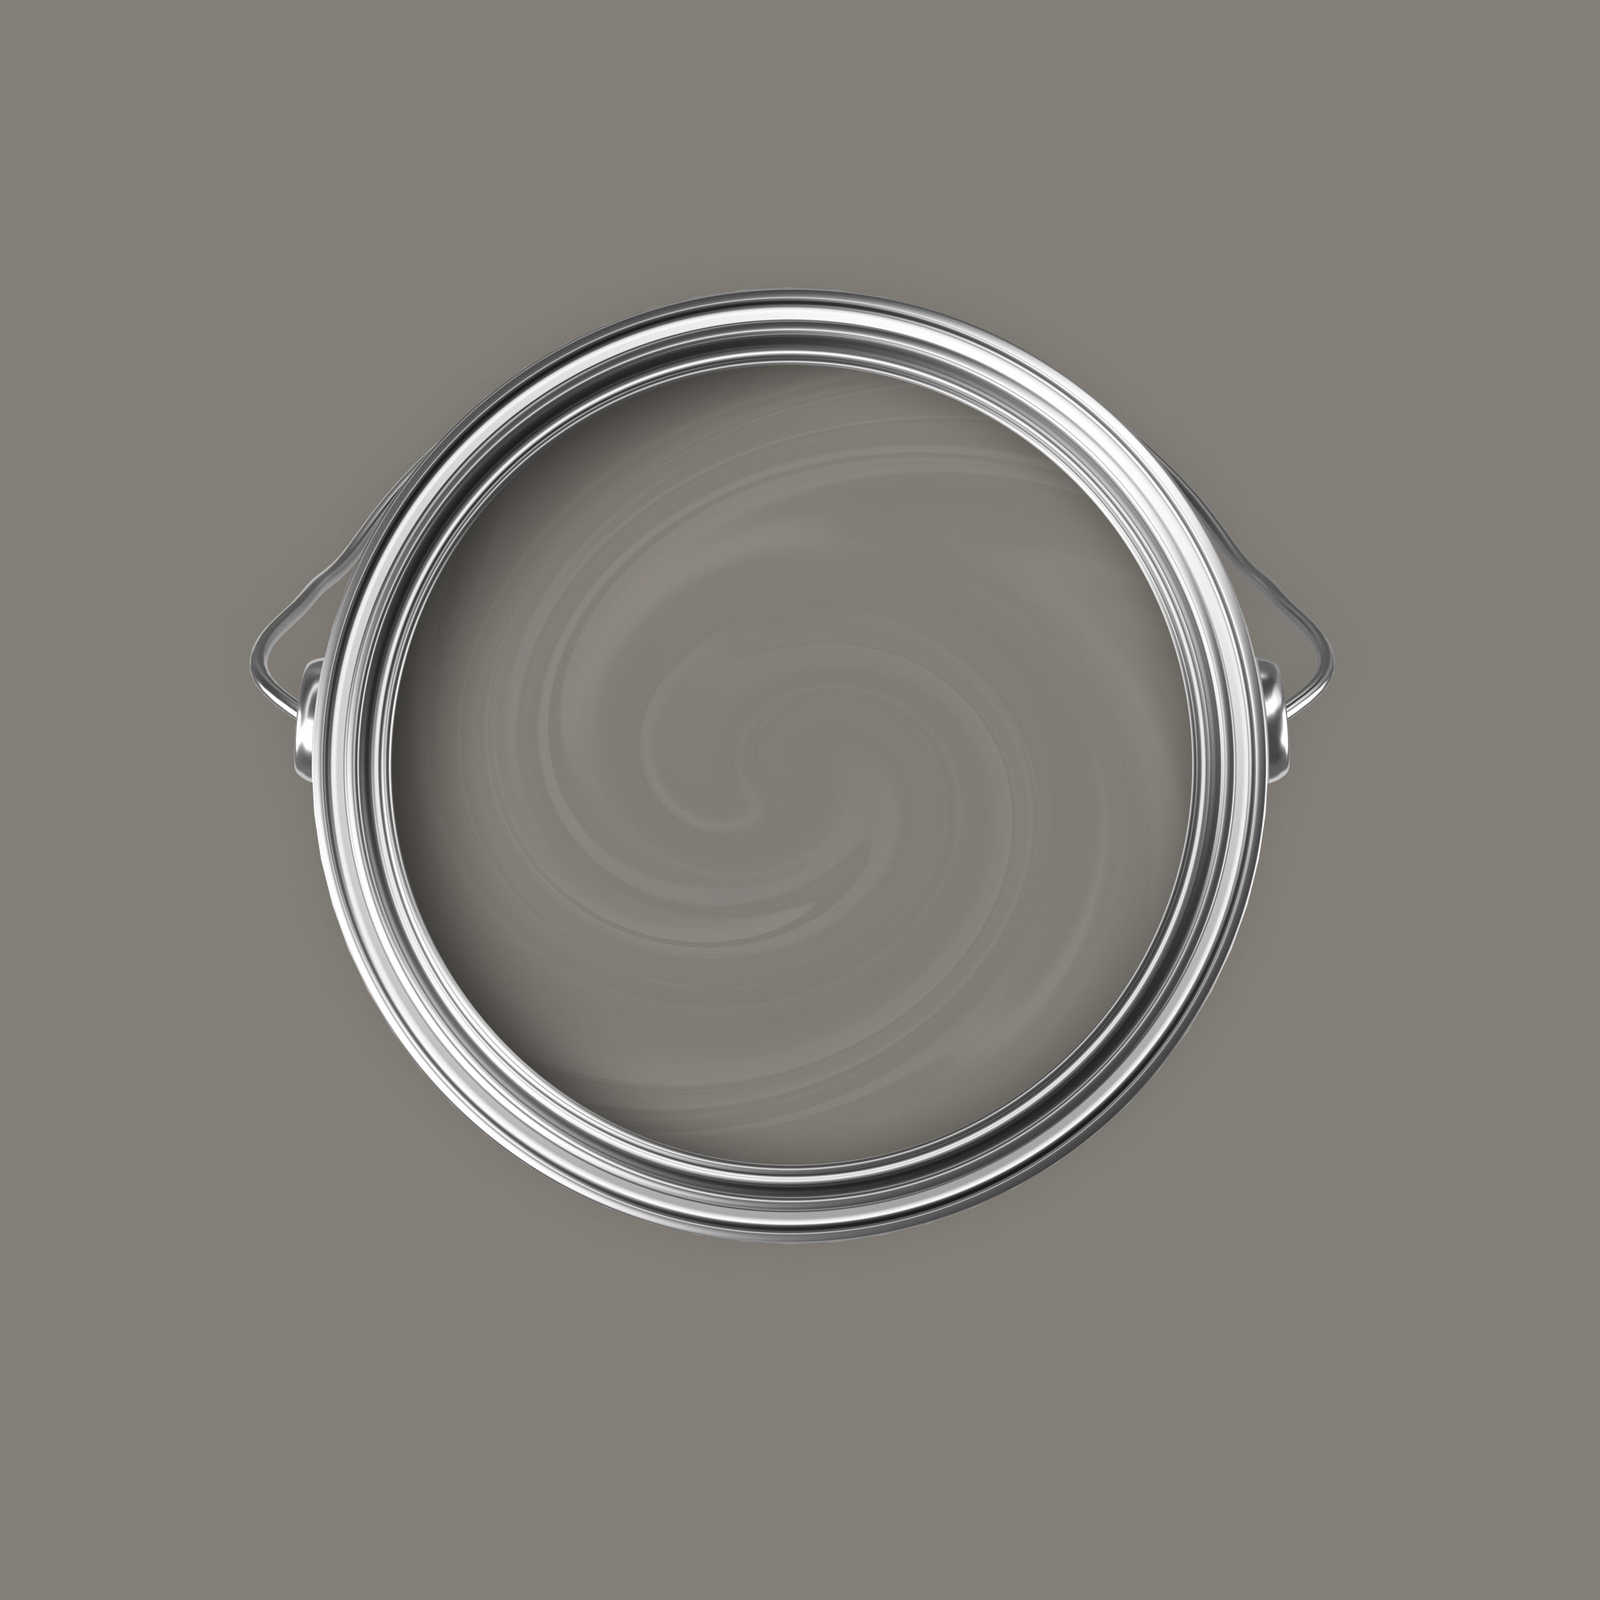             Pittura murale Premium grigio cemento neutro »Creamy Grey« NW112 – 5 litri
        